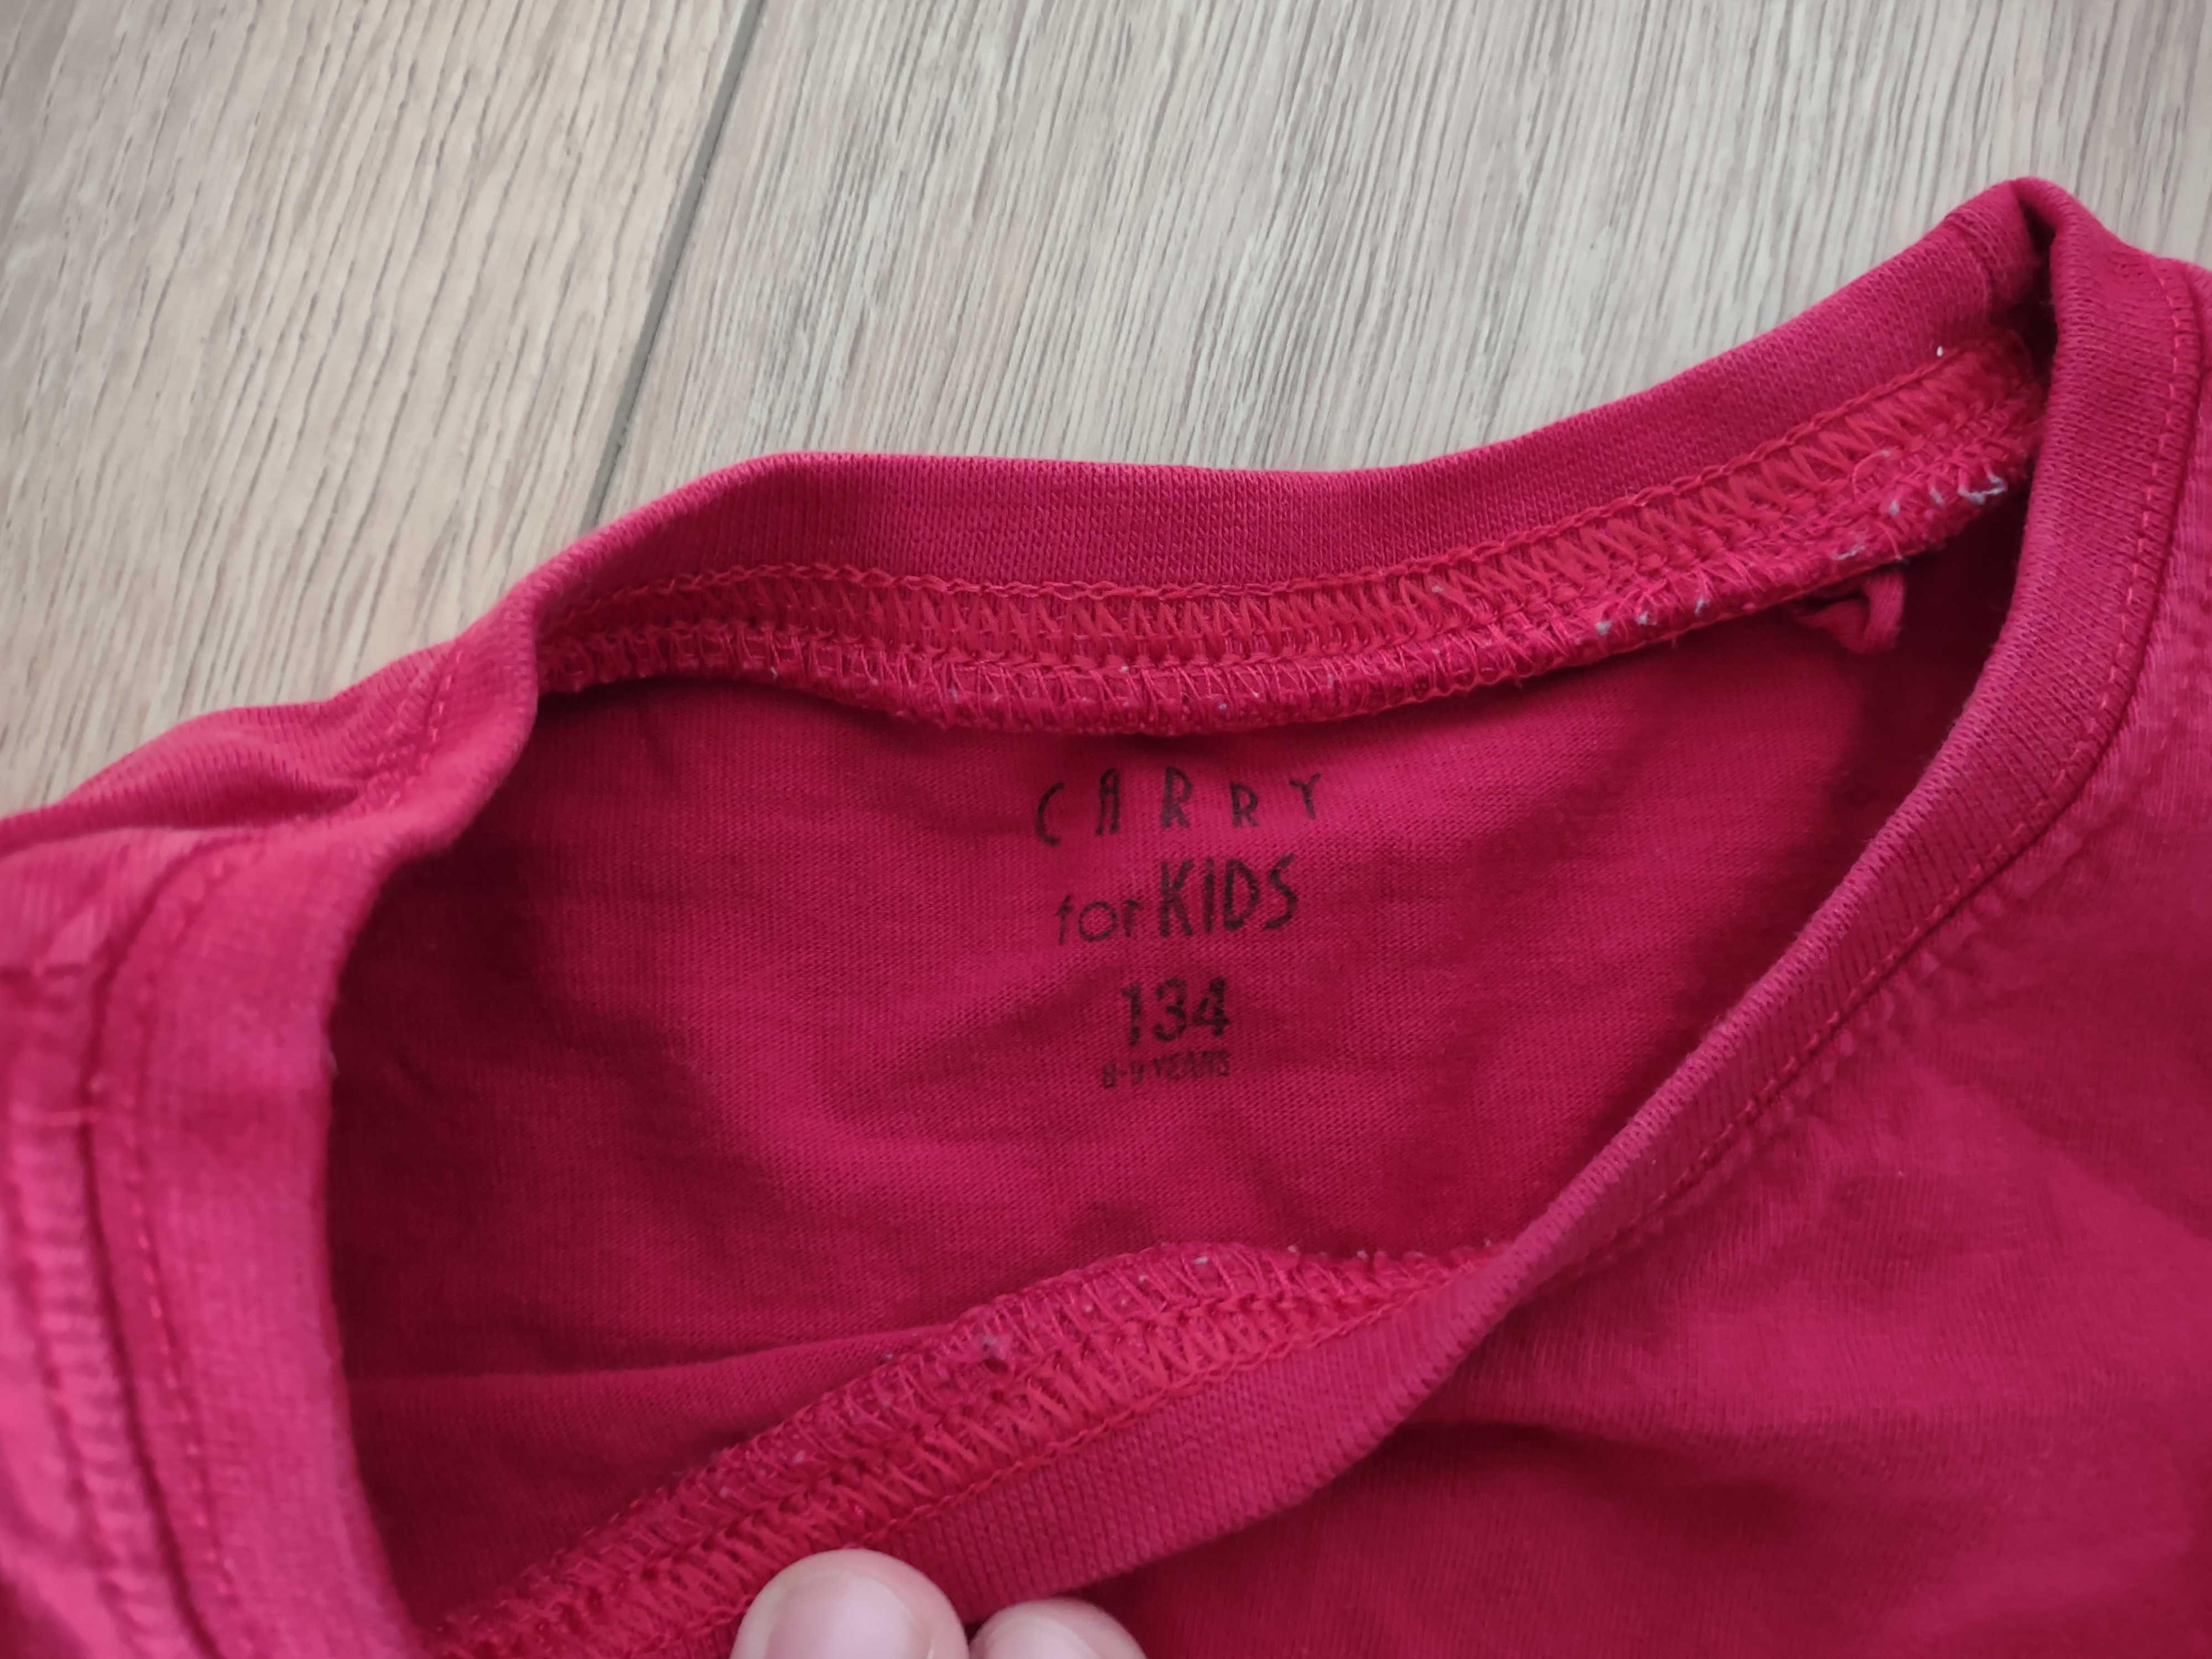 Czerwona bluzka CARRY, 134 cm